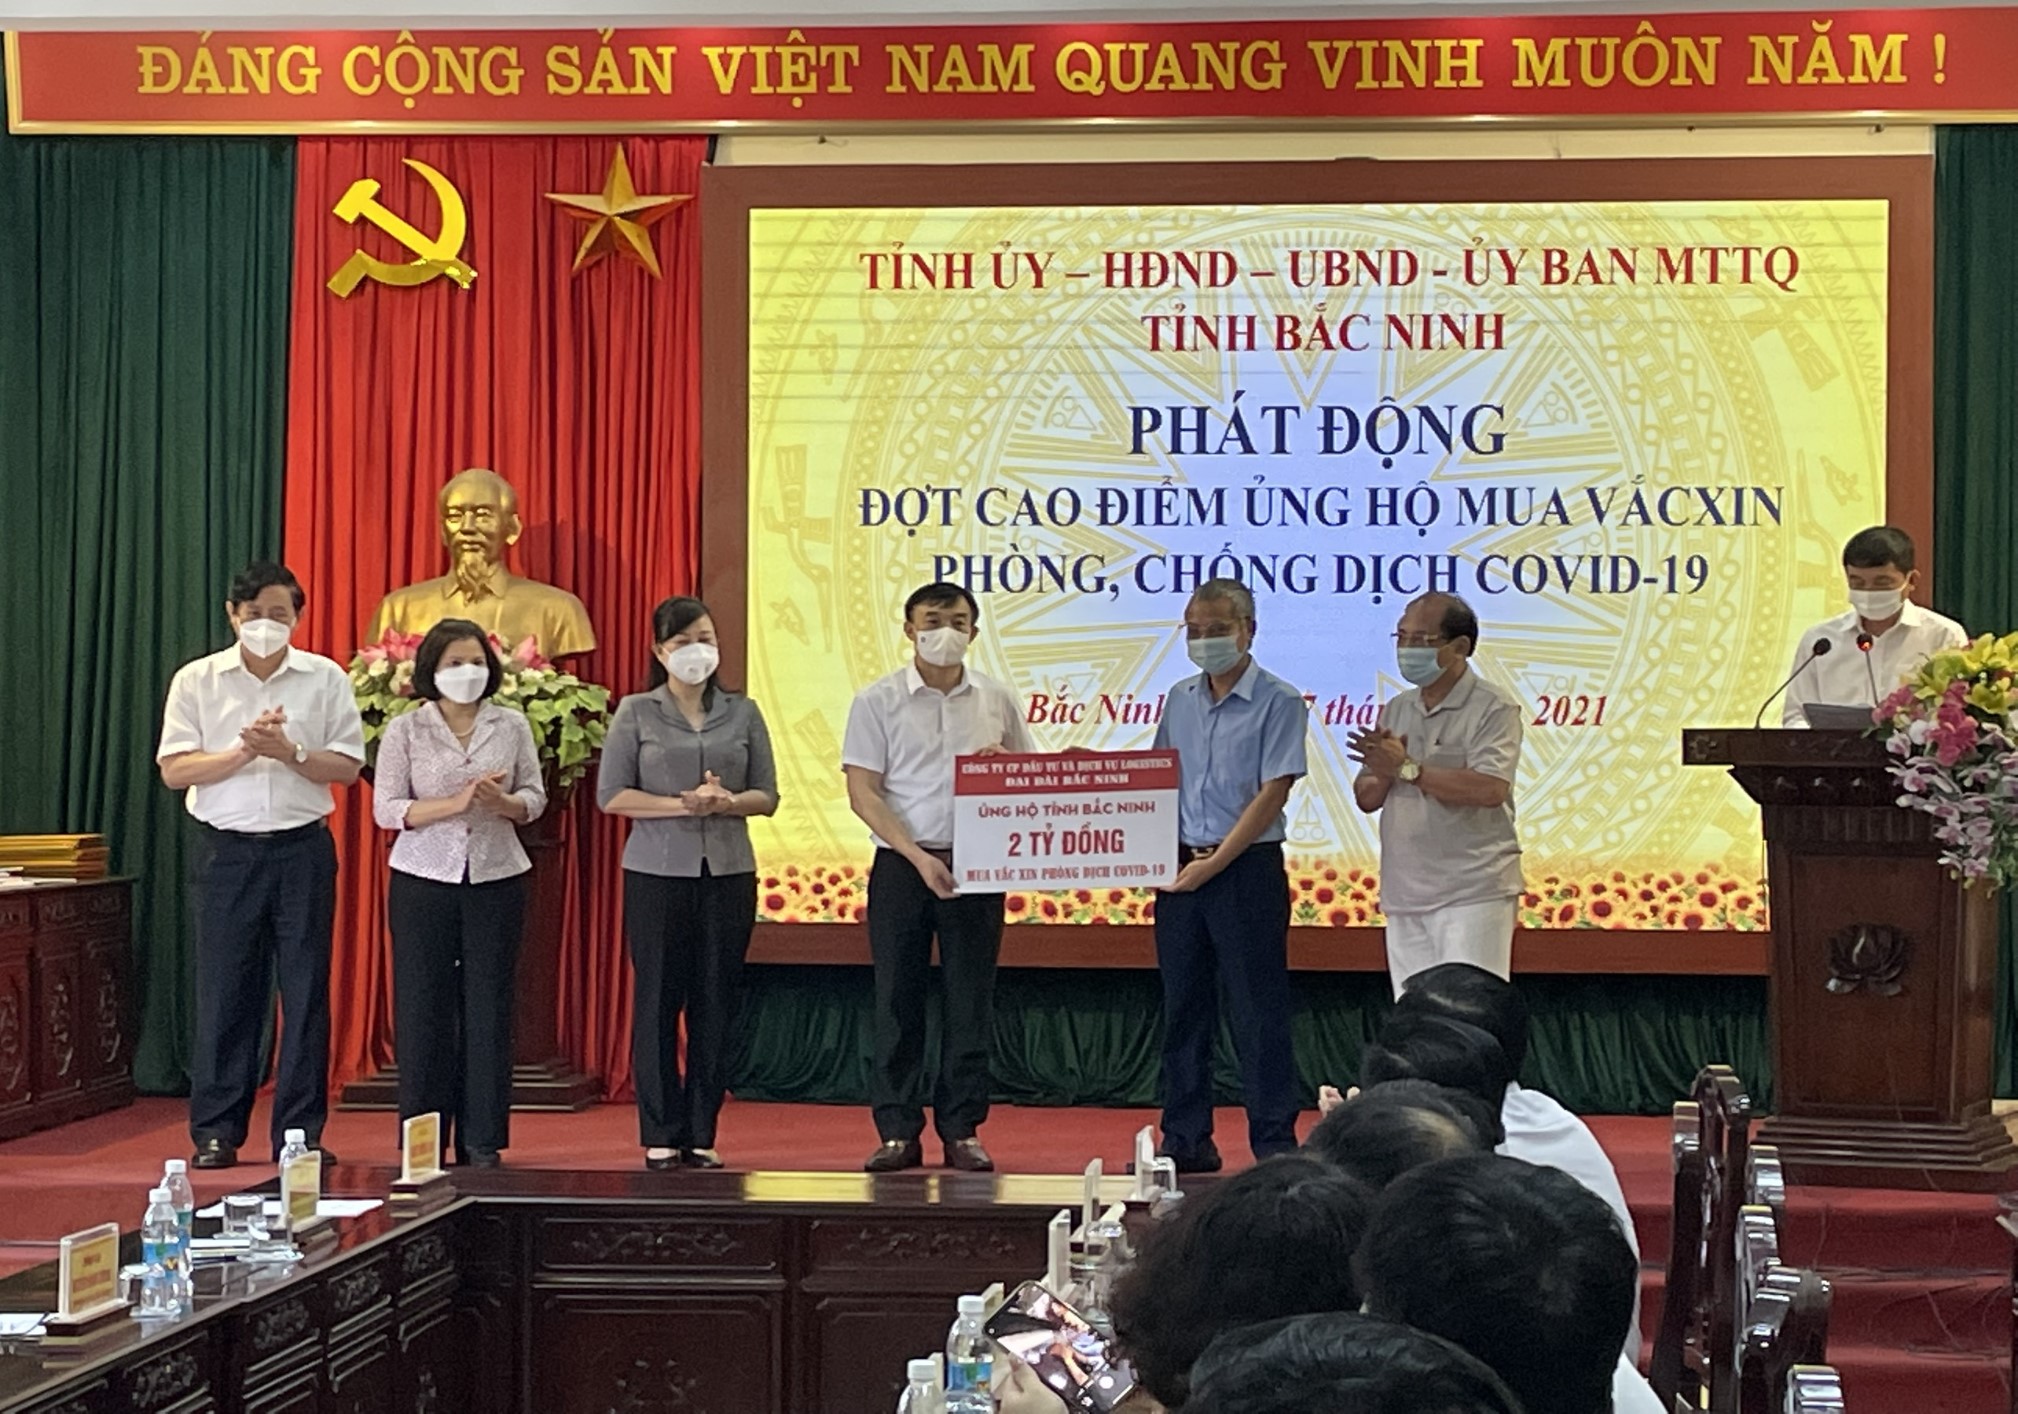 Tập đoàn ủng hộ 2 tỷ đồng để hỗ trợ tỉnh Bắc Ninh mua vắc xin phòng, chống dịch COVID-19